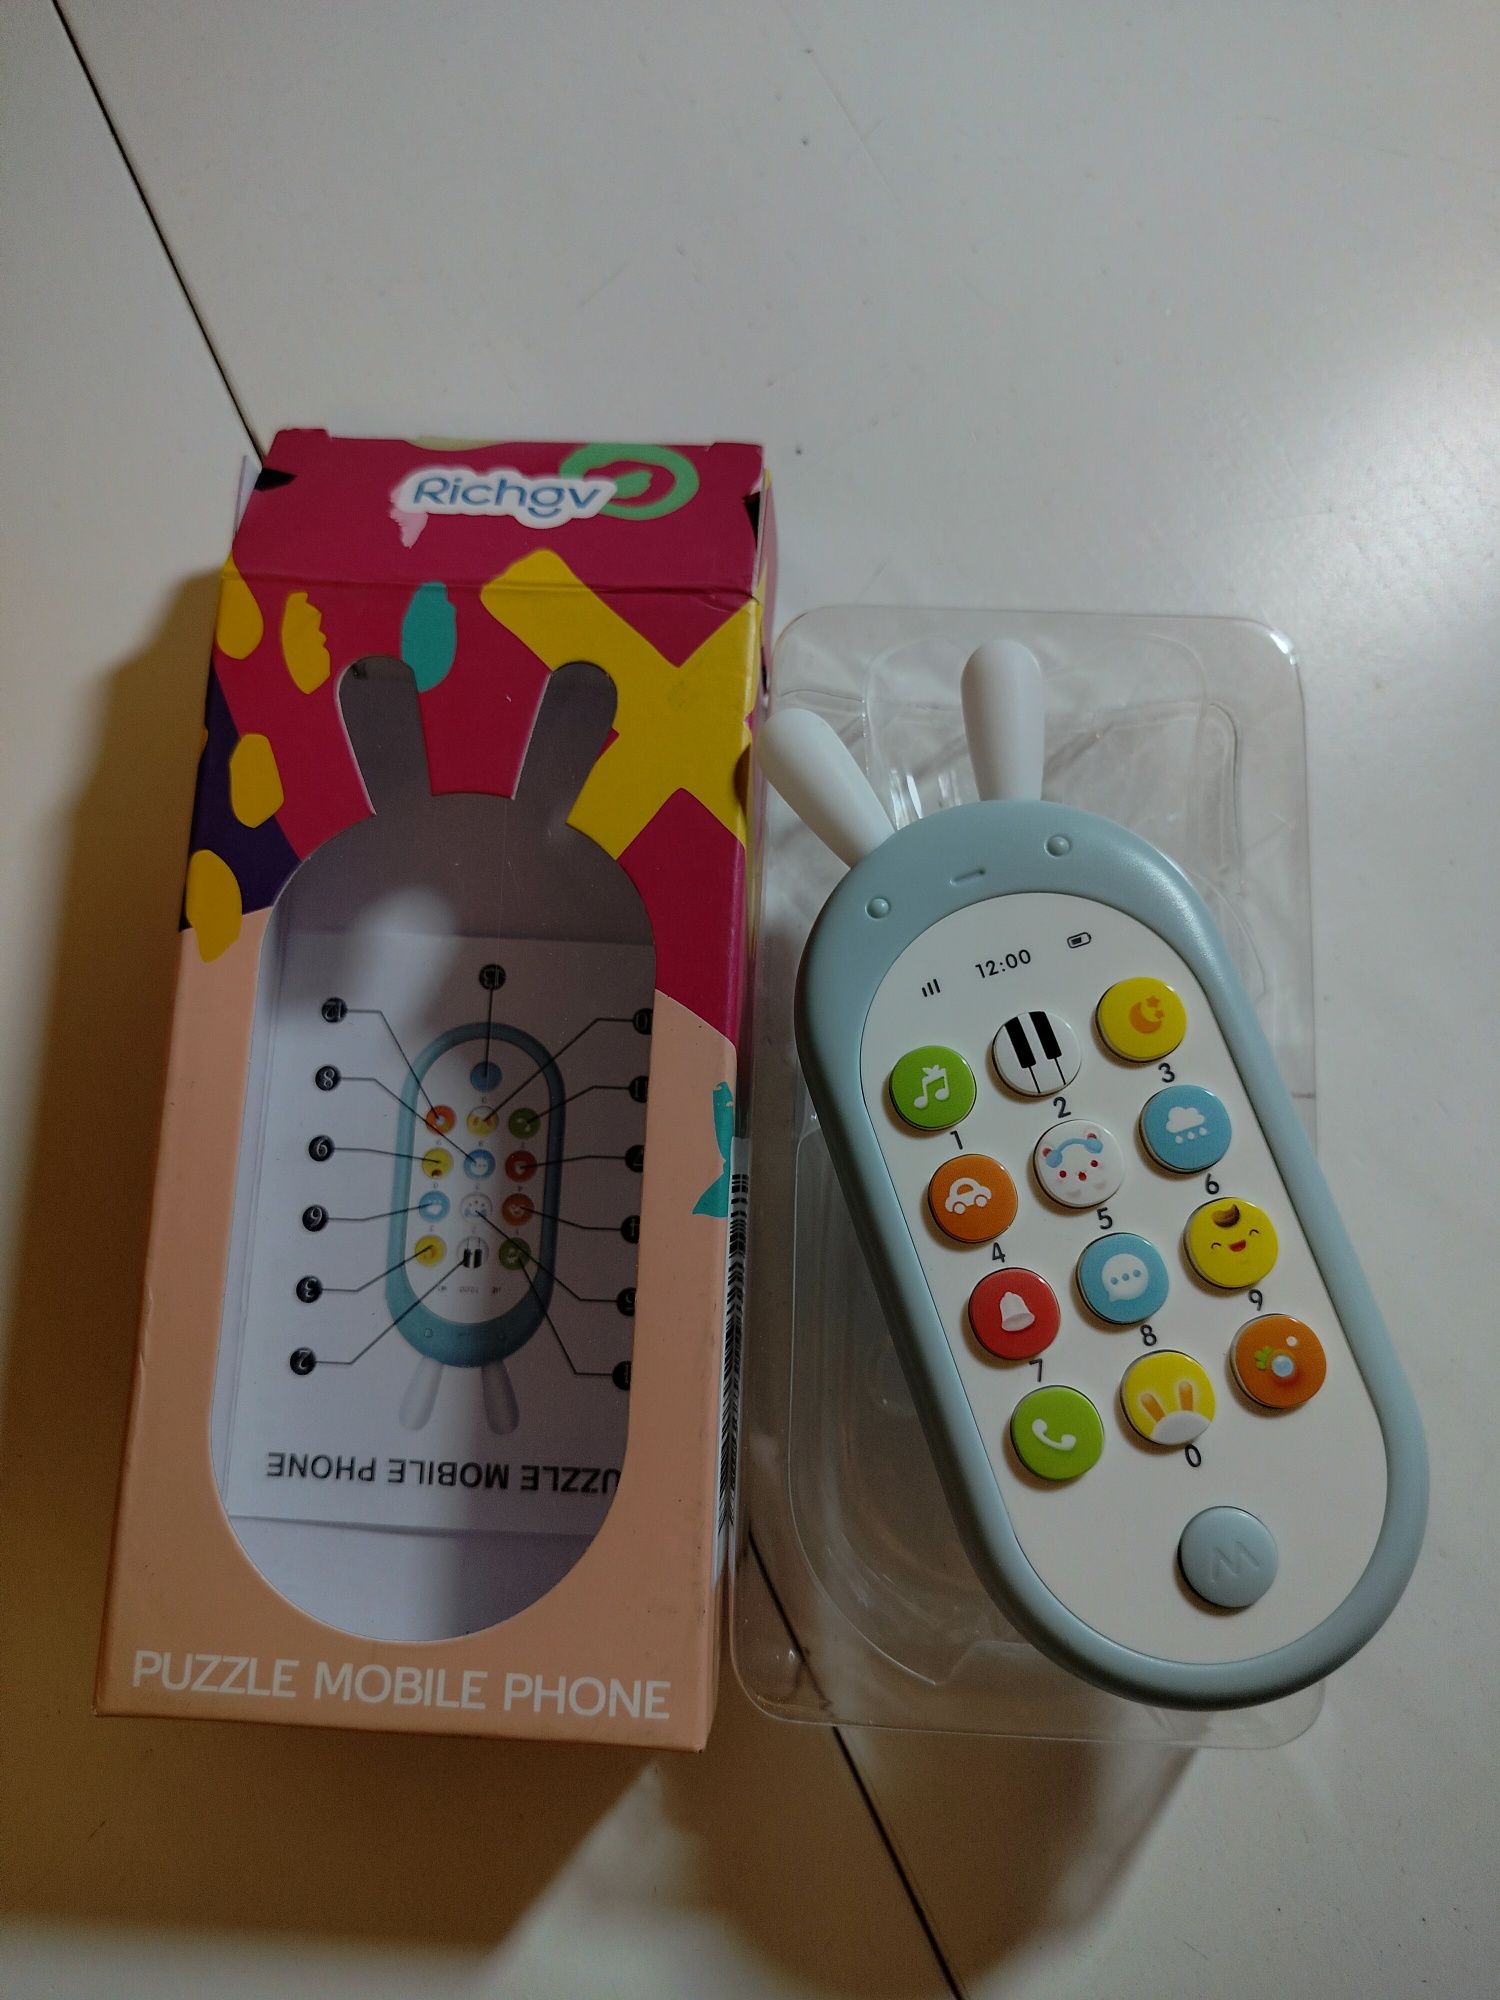 Telefon zabawka dla dzieci